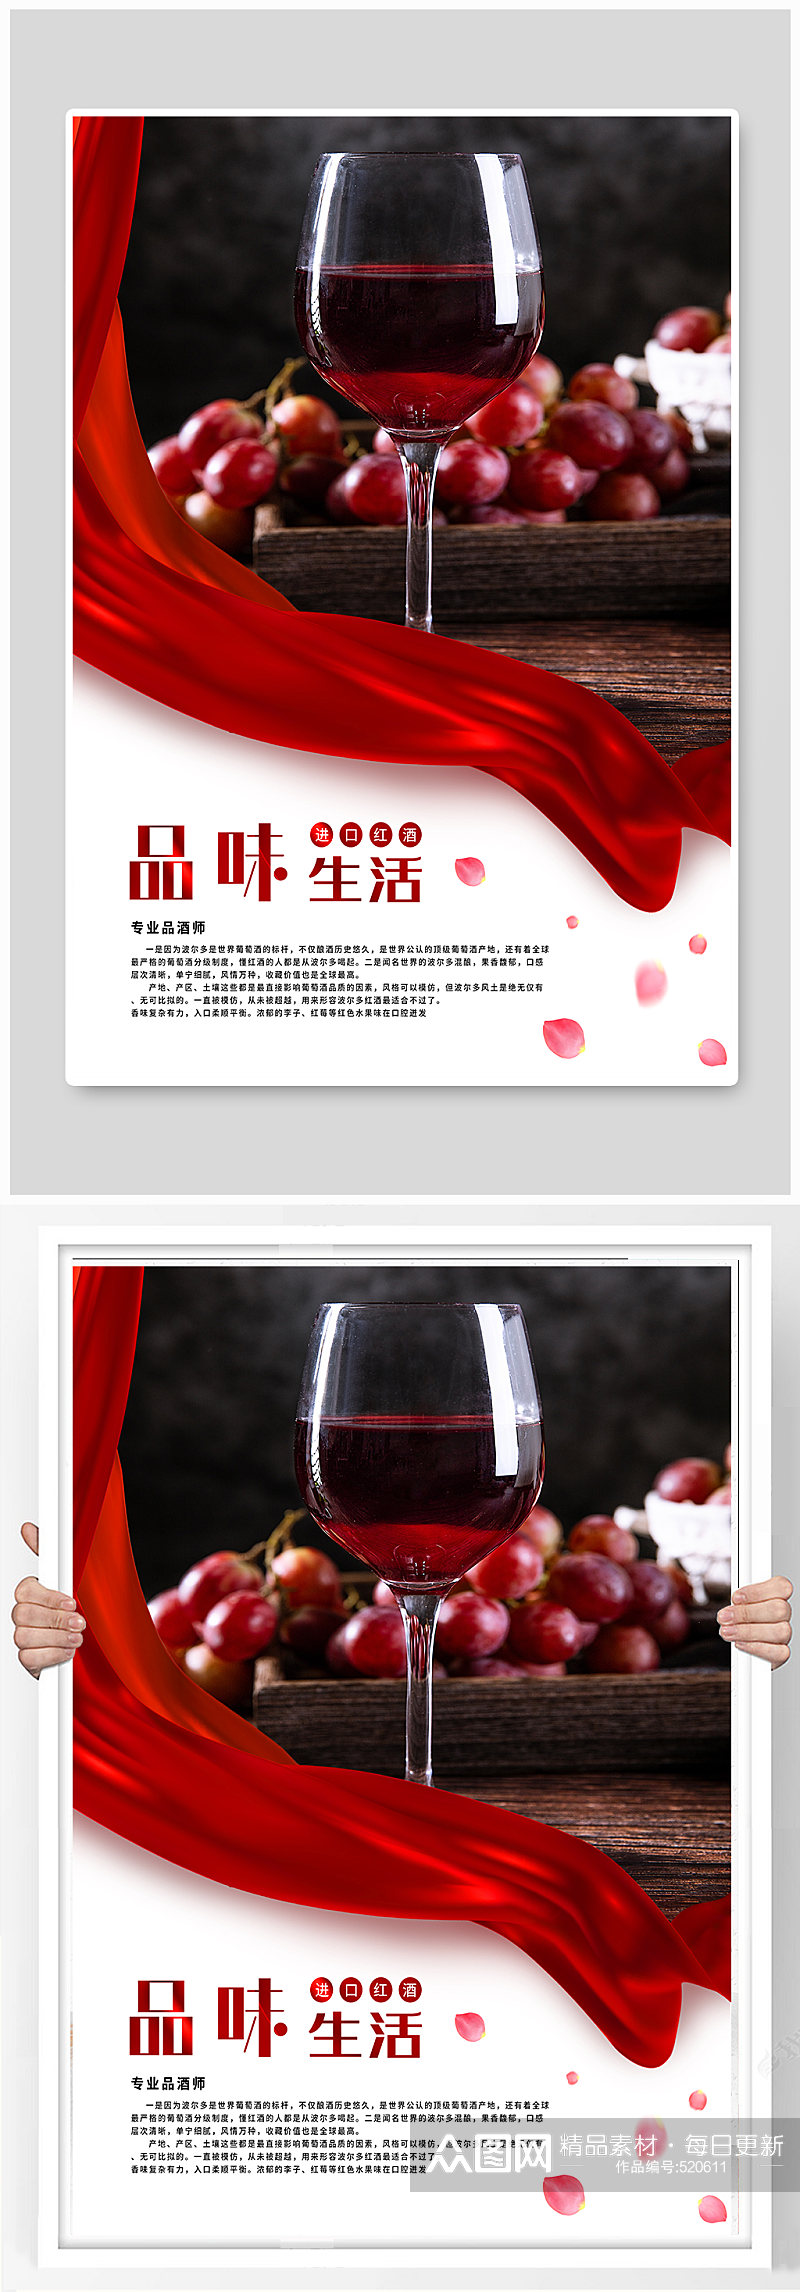 红酒宣传海报展板素材